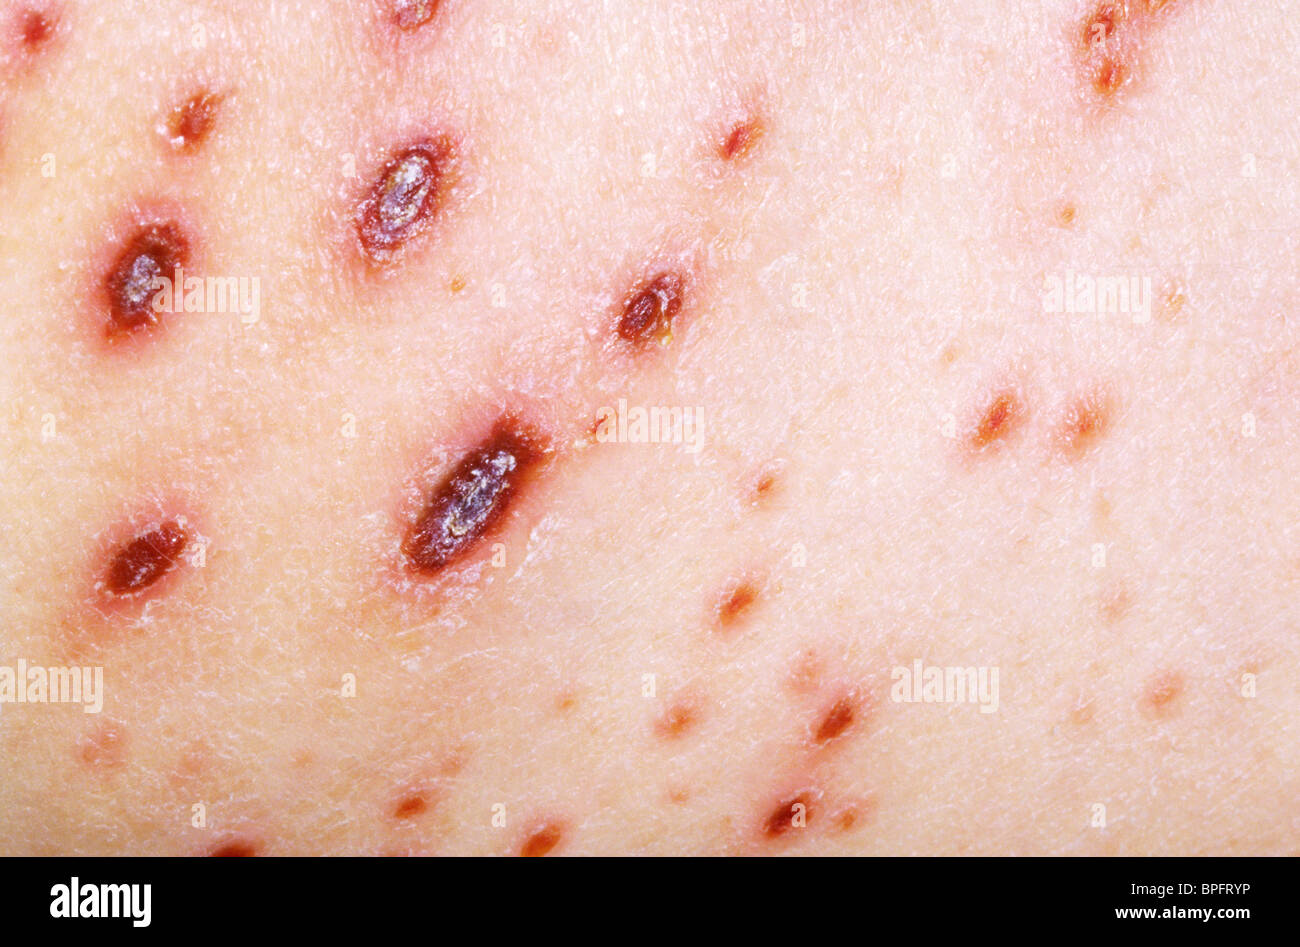 Une photo d'une maladie très contagieuse provoquée par la varicelle, un herpesvirus. Banque D'Images